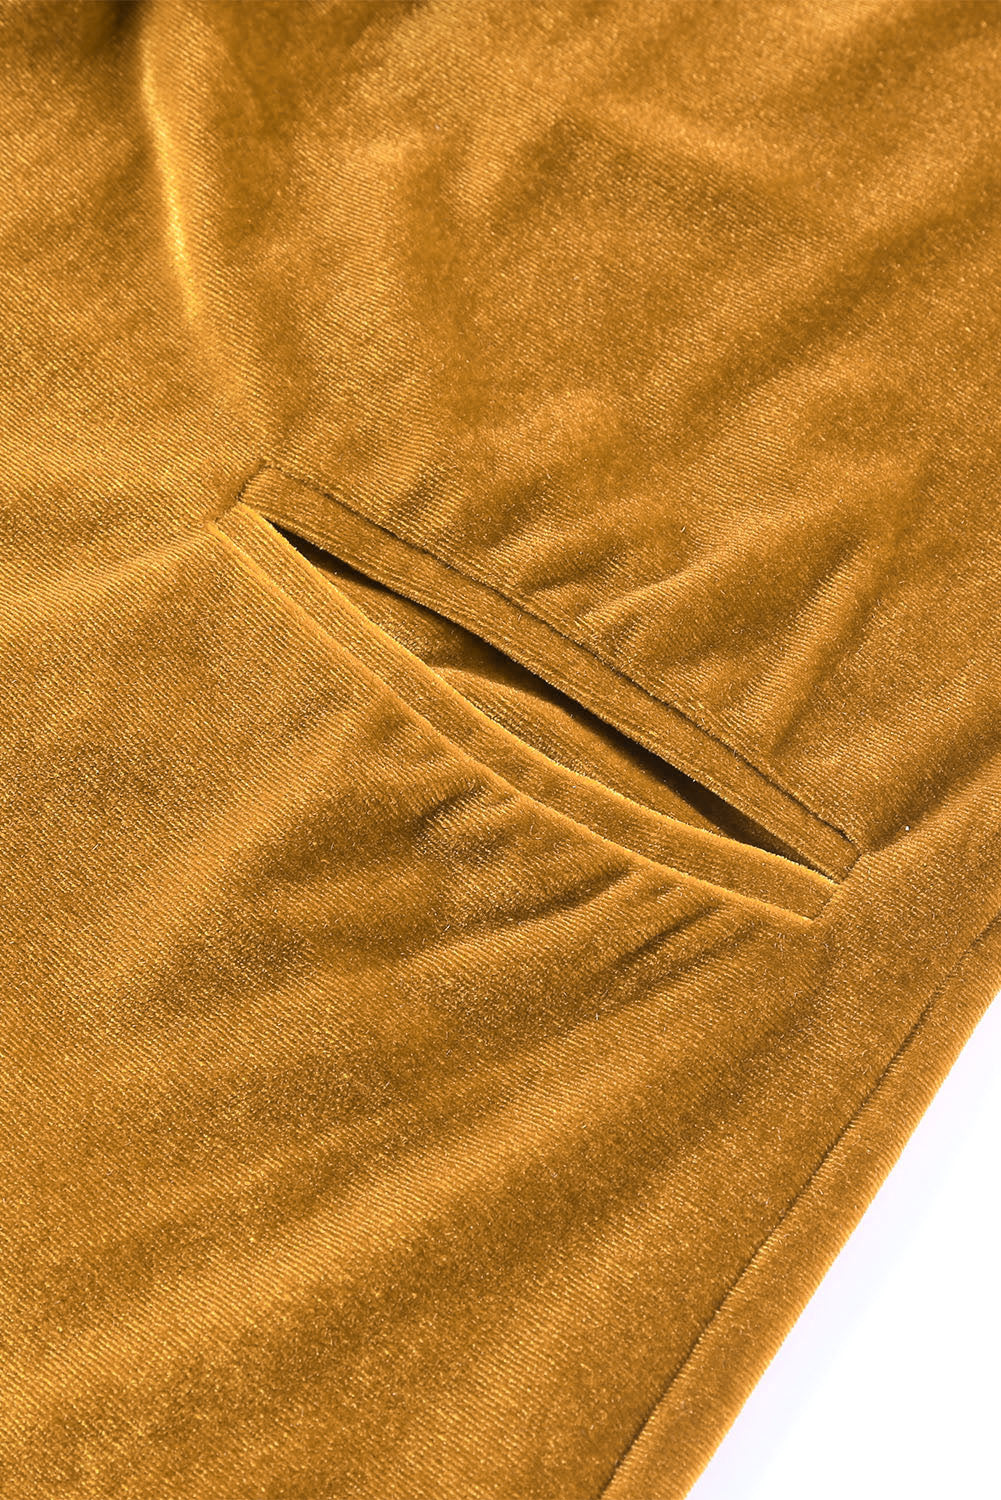 Gelber Retro-Samtmantel mit langen Ärmeln und Taschen